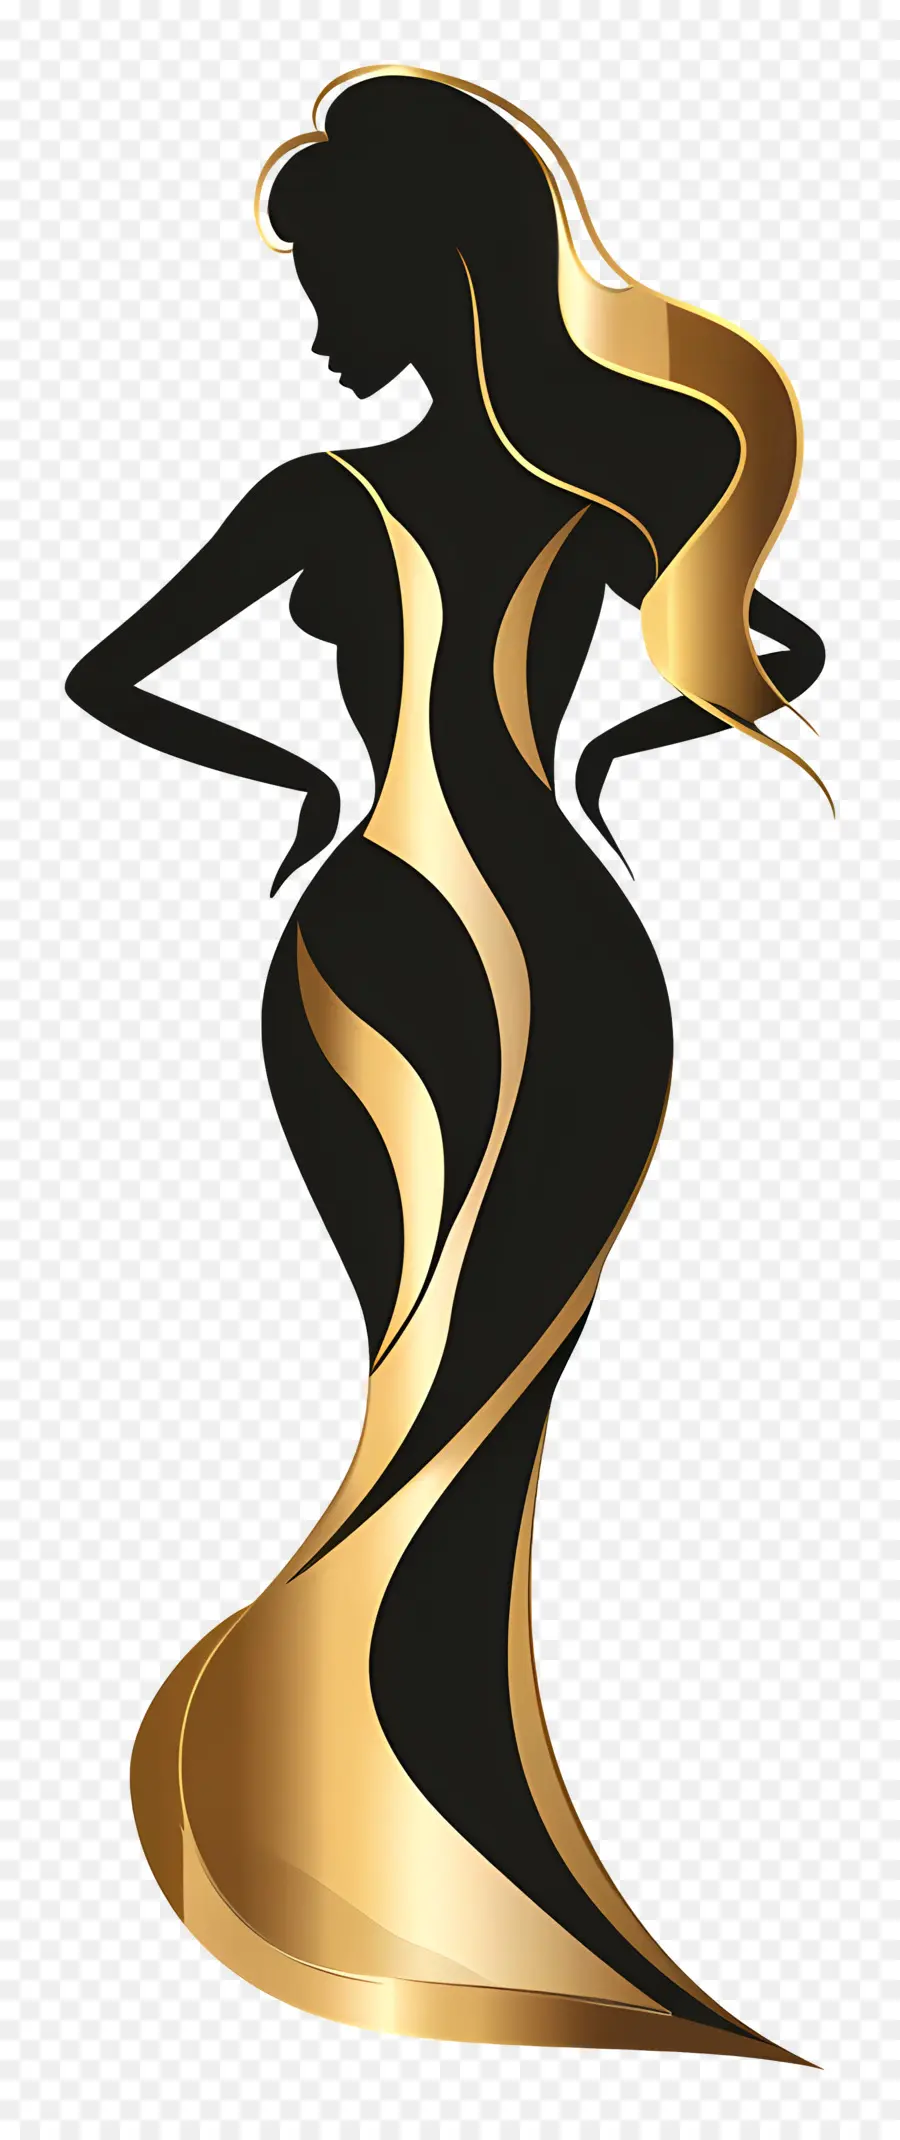 Donna voluttuosa Silhouette Donna Nera vestito nero Accenti oro capelli lunghi - Donna elegante in abito nero e oro